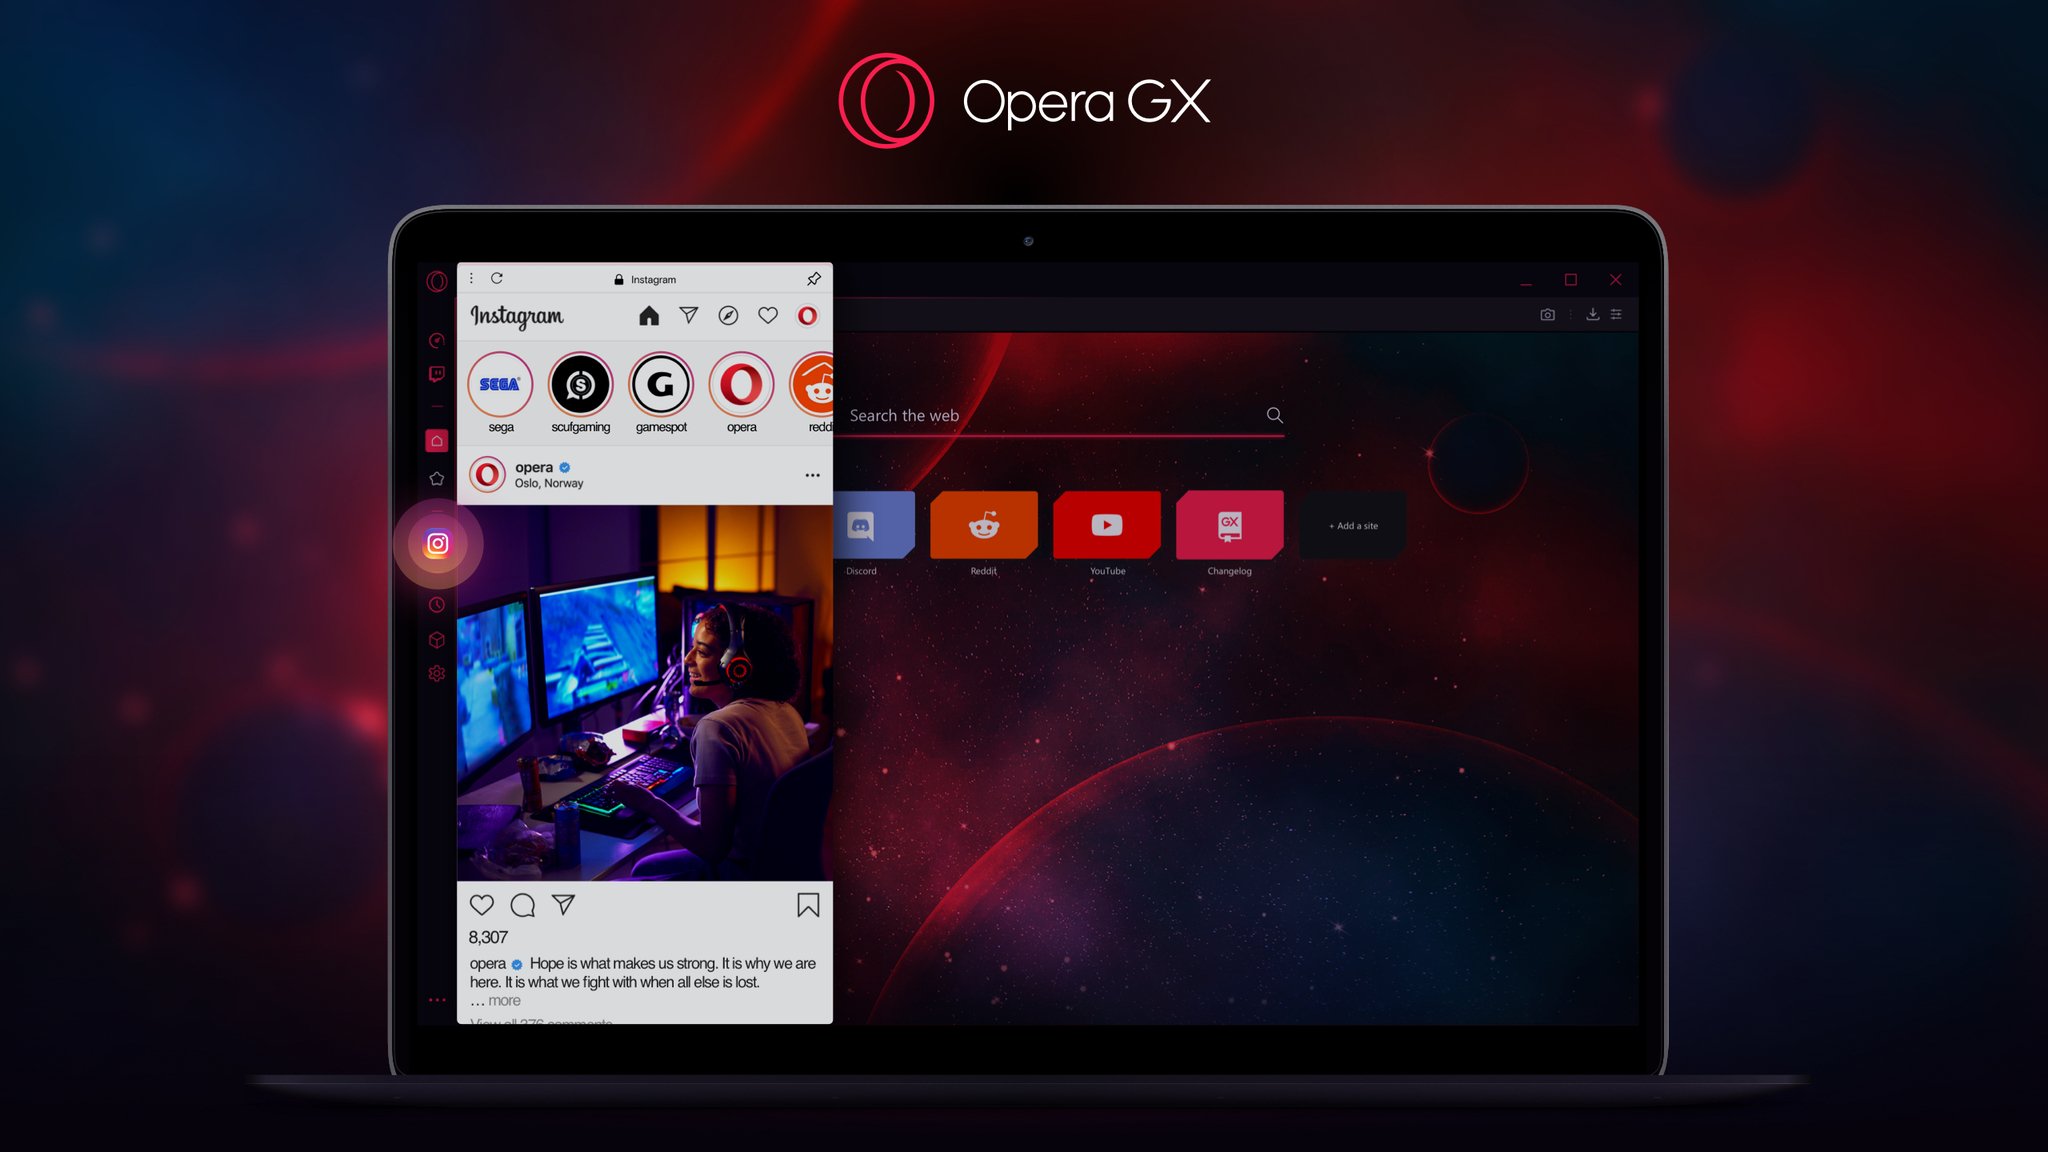 Navegador gamer: 7 motivos para usar o Opera GX